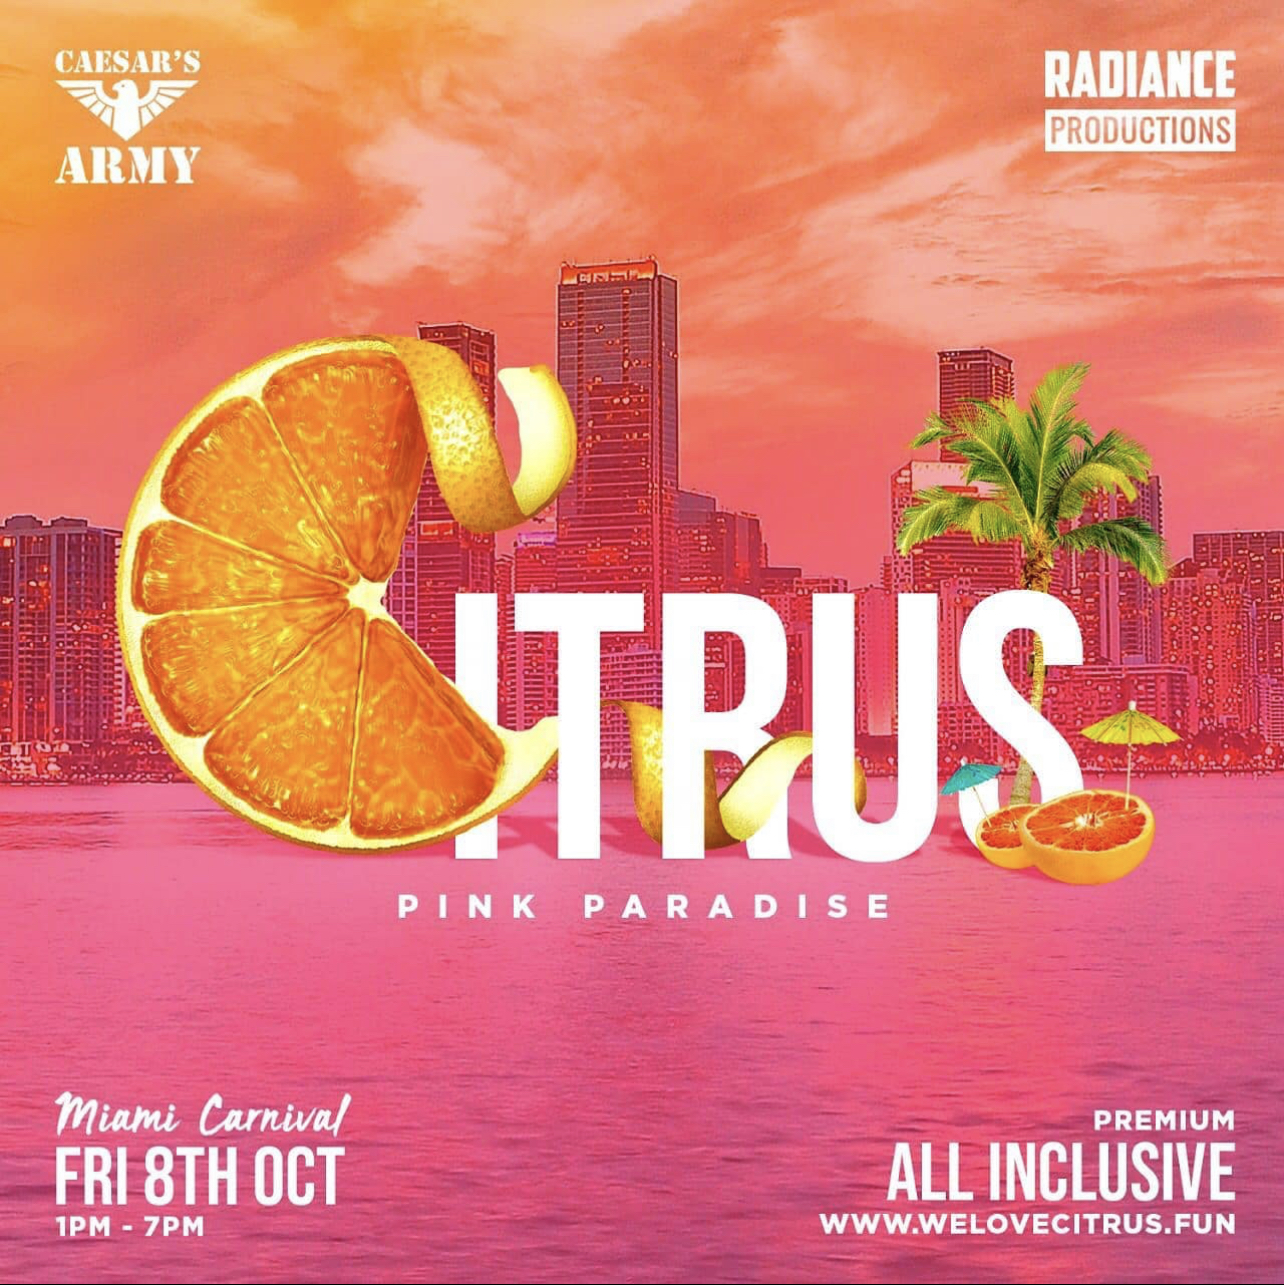 Citrus Miami Carnival Flyer